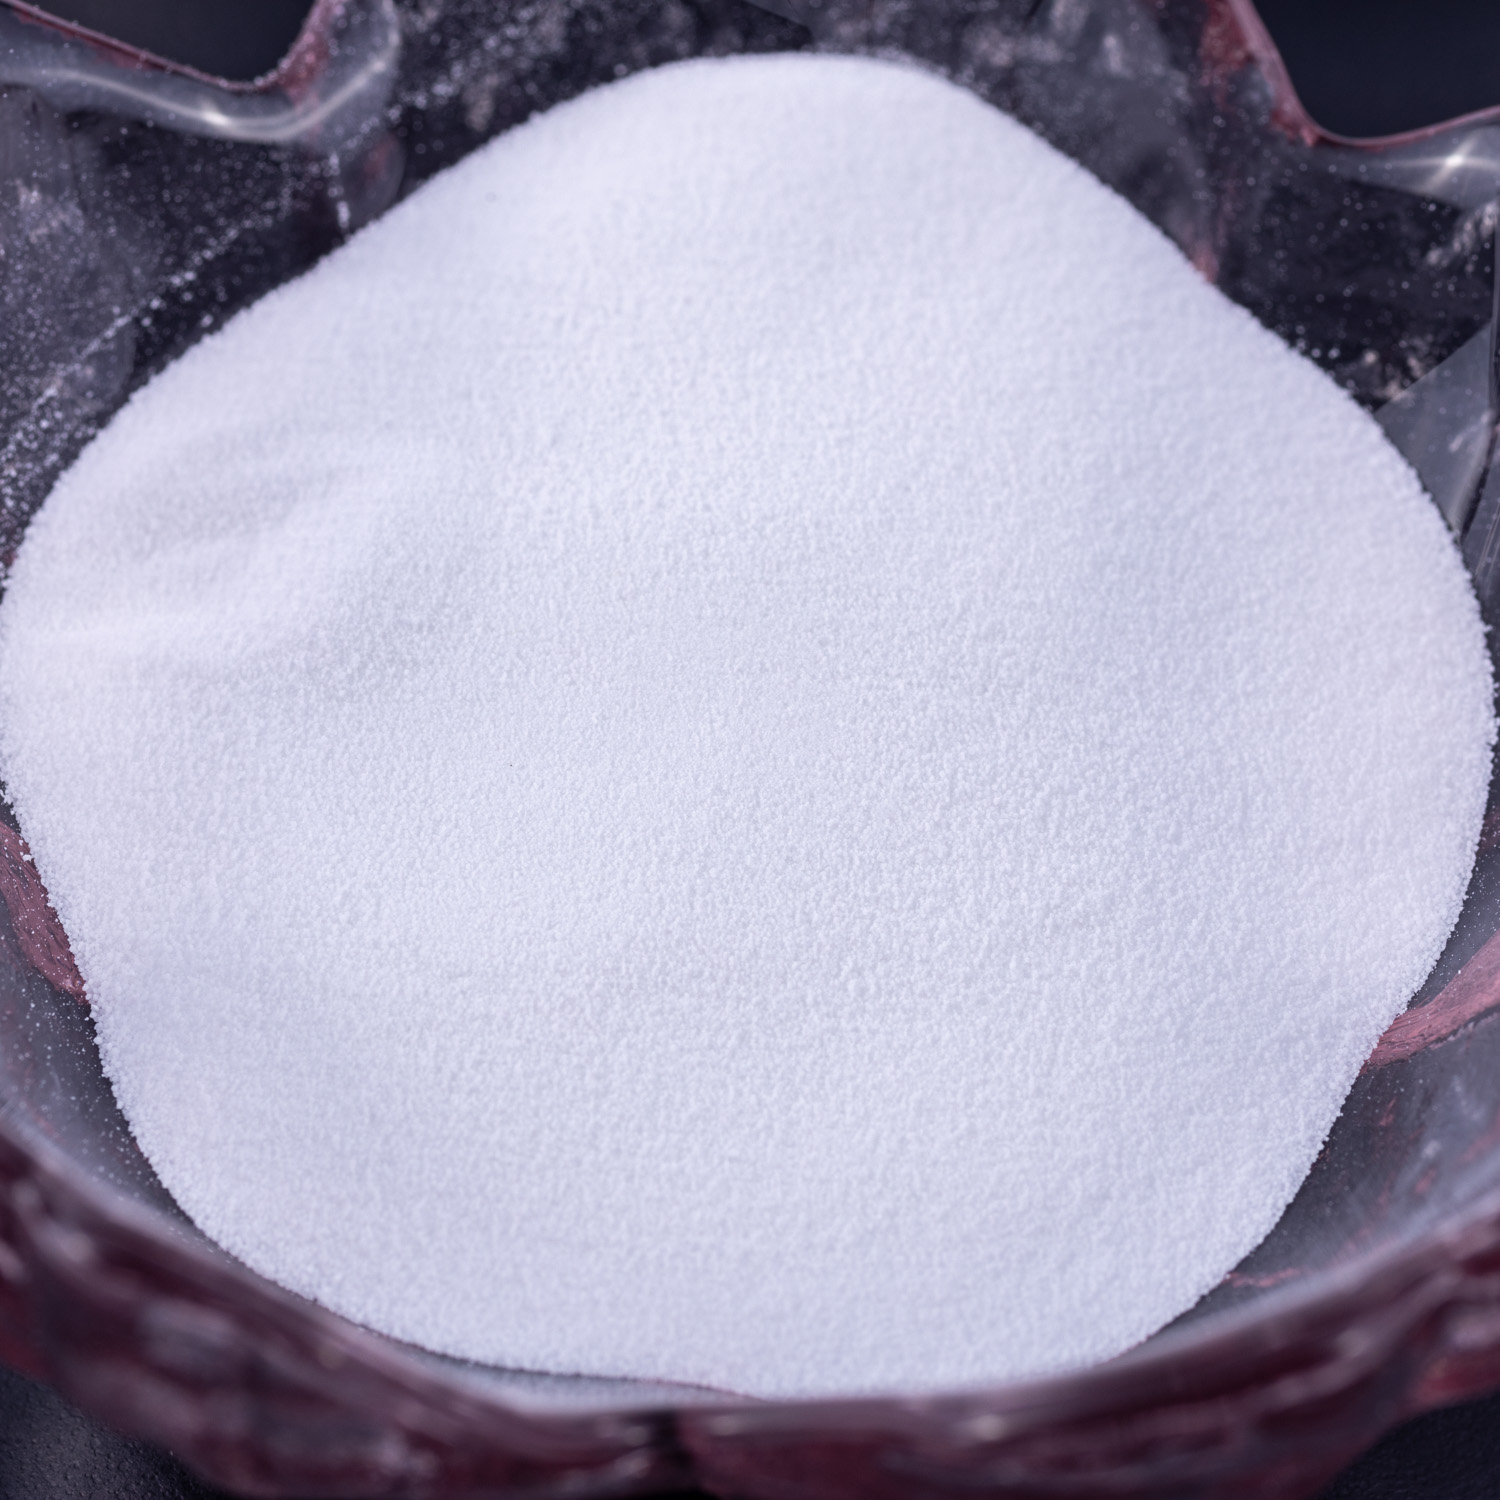 Bicarbonato de sodio de grado alimenticio de suministro de fábrica de la mejor calidad o bicarbonato de sodio